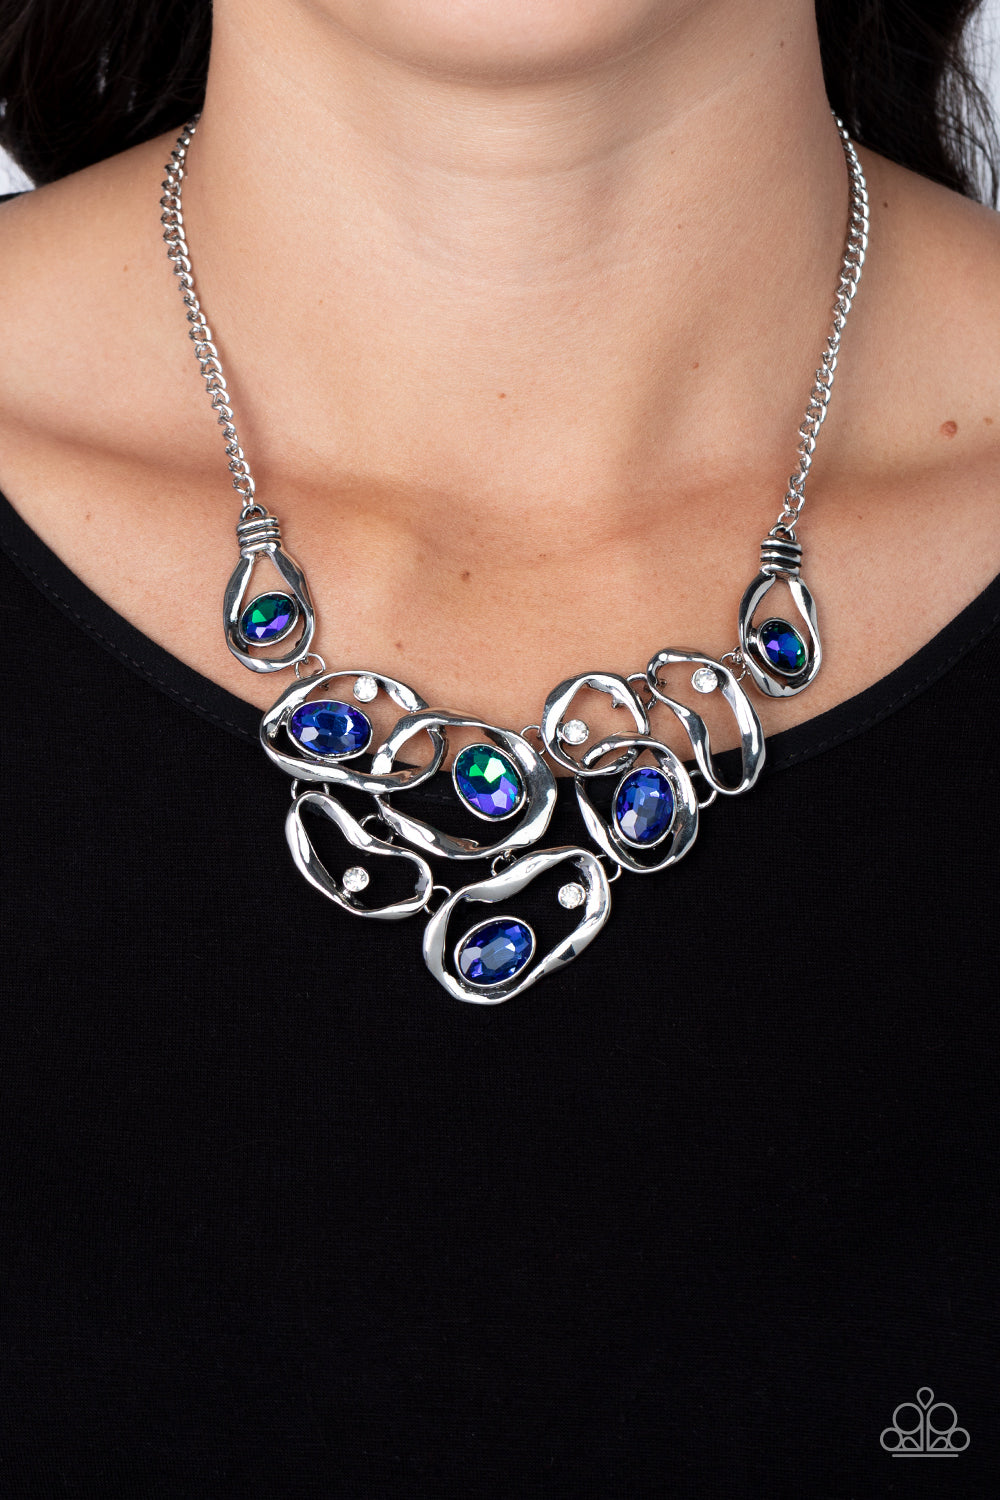 Paparazzi Accessories: Warp Speed - Blue Iridescent Necklace